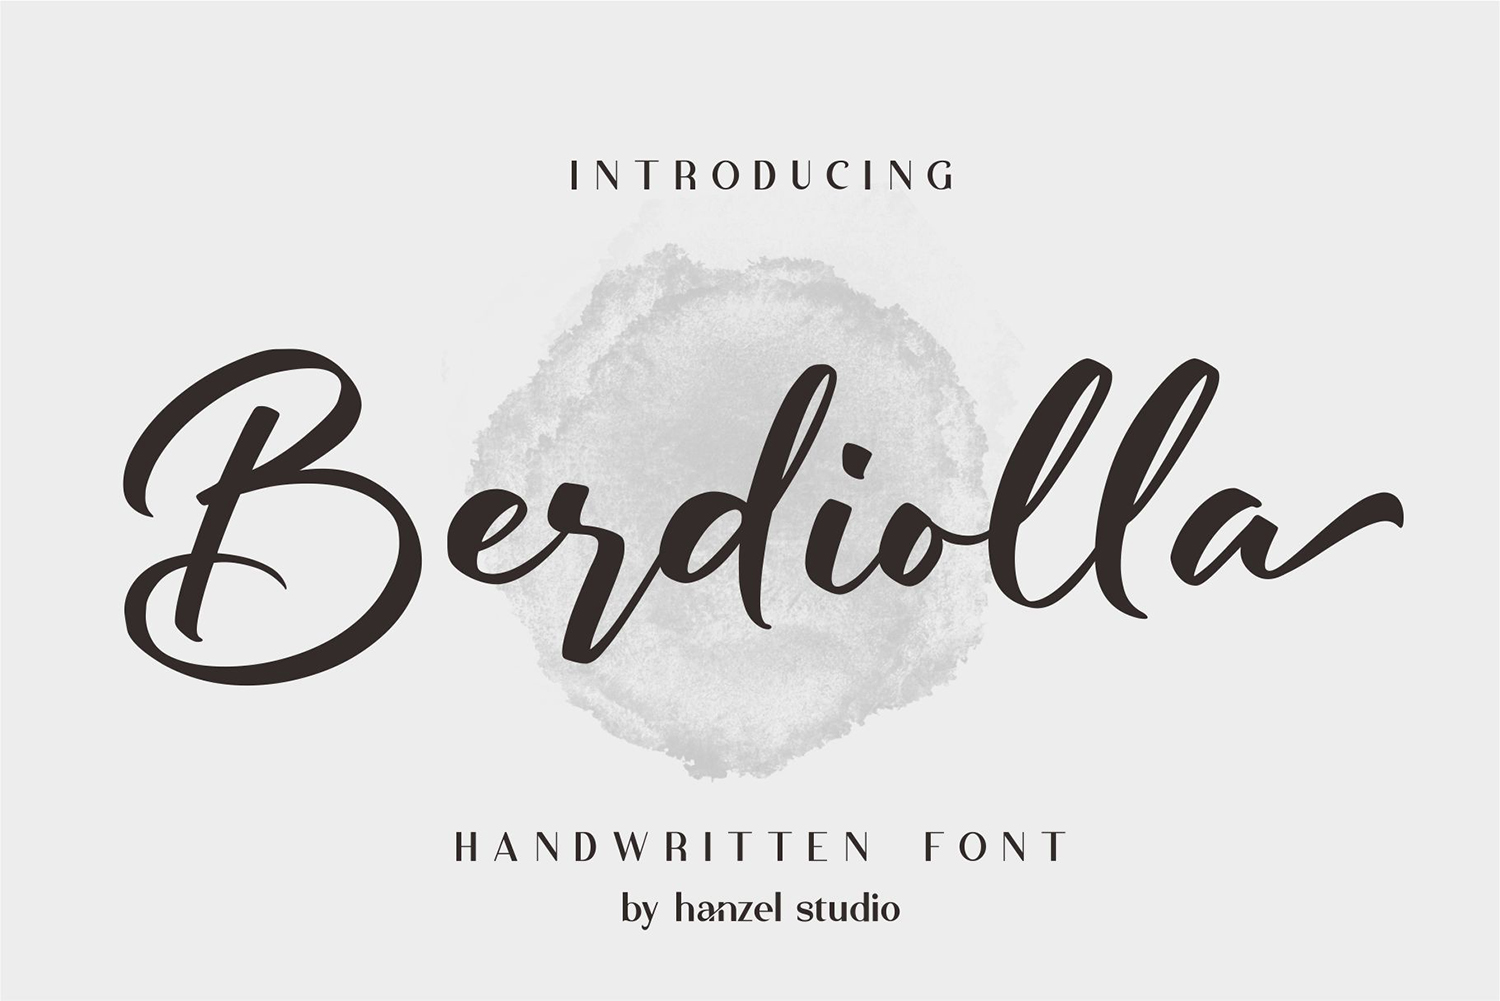 Berdiolla Free Font